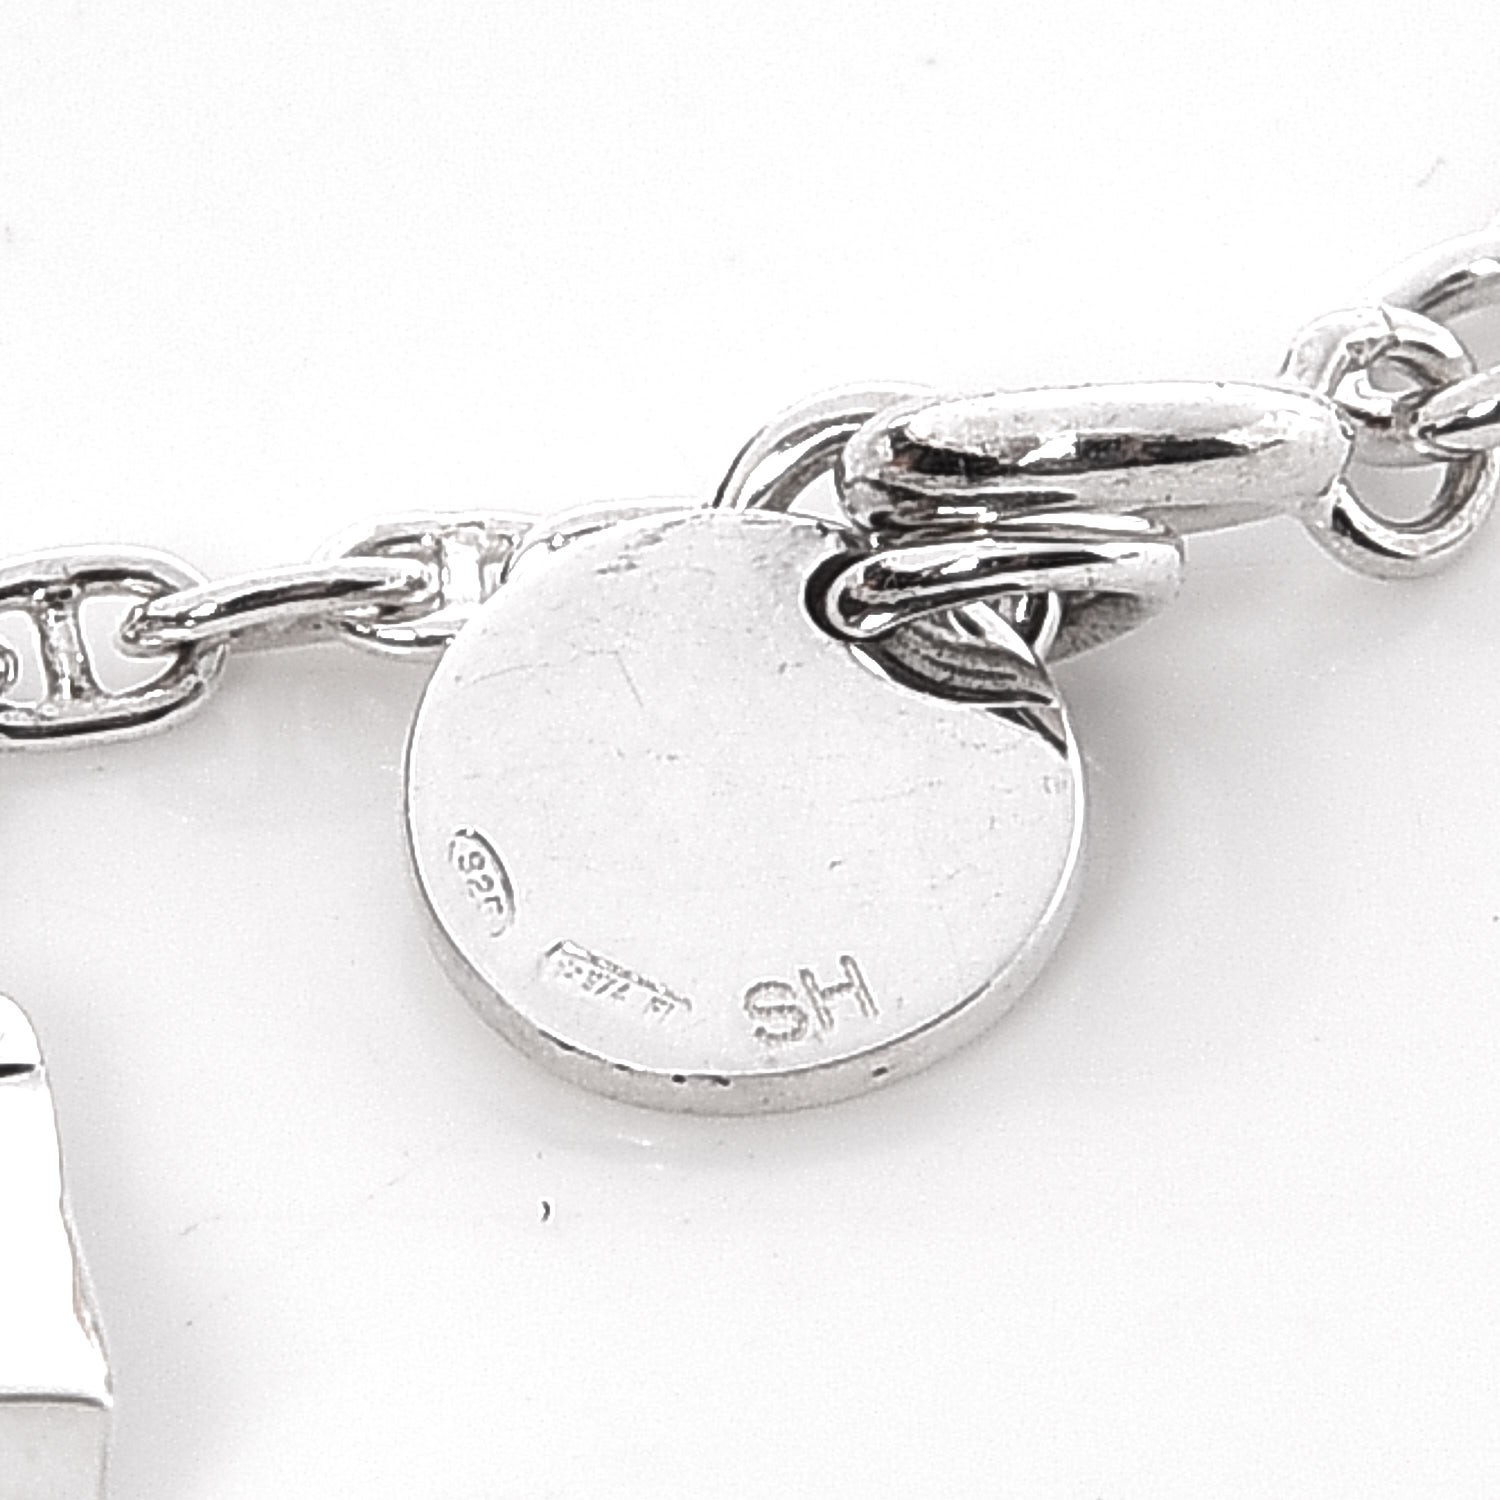 HERMES Sterling Silver Mini Birkin Amulette Bracelet SH 334854